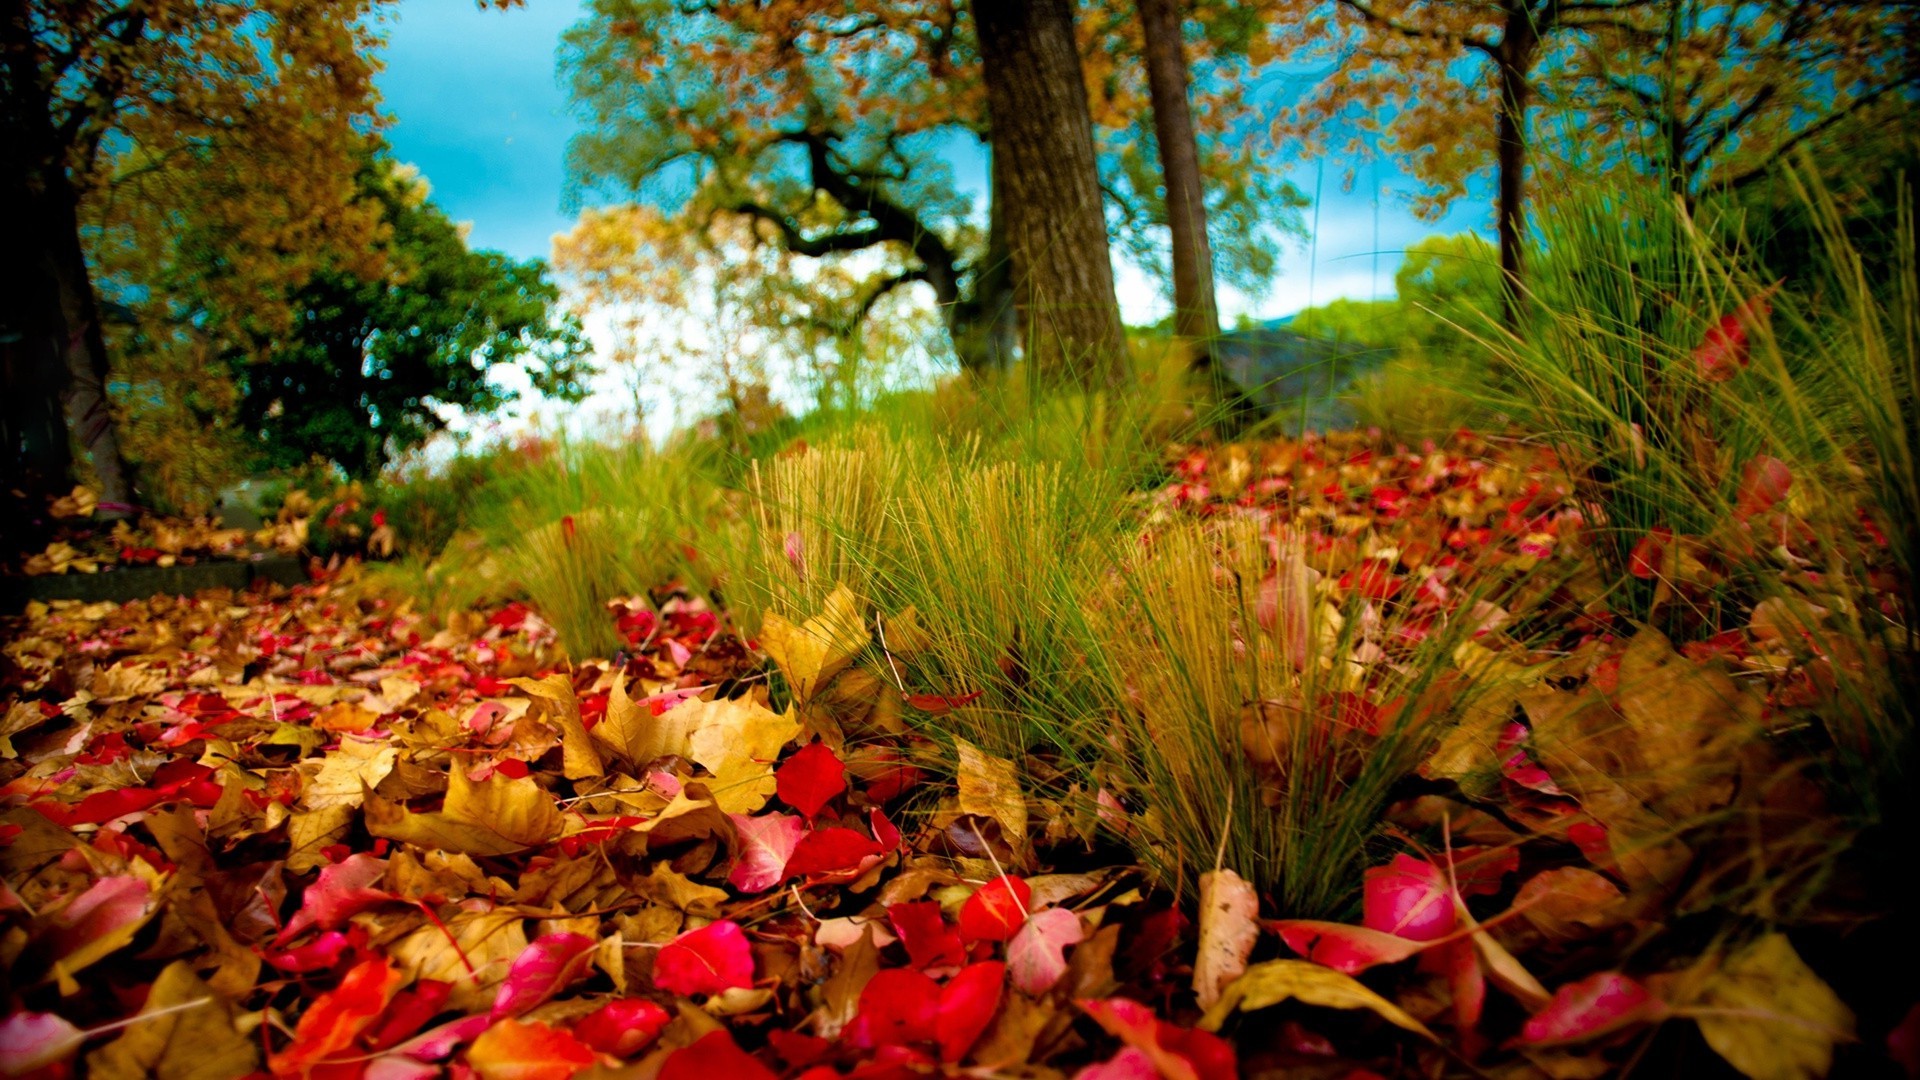 листья осень лист дерево природа парк кленовый на открытом воздухе древесины сезон пейзаж цвет сад флора цветок